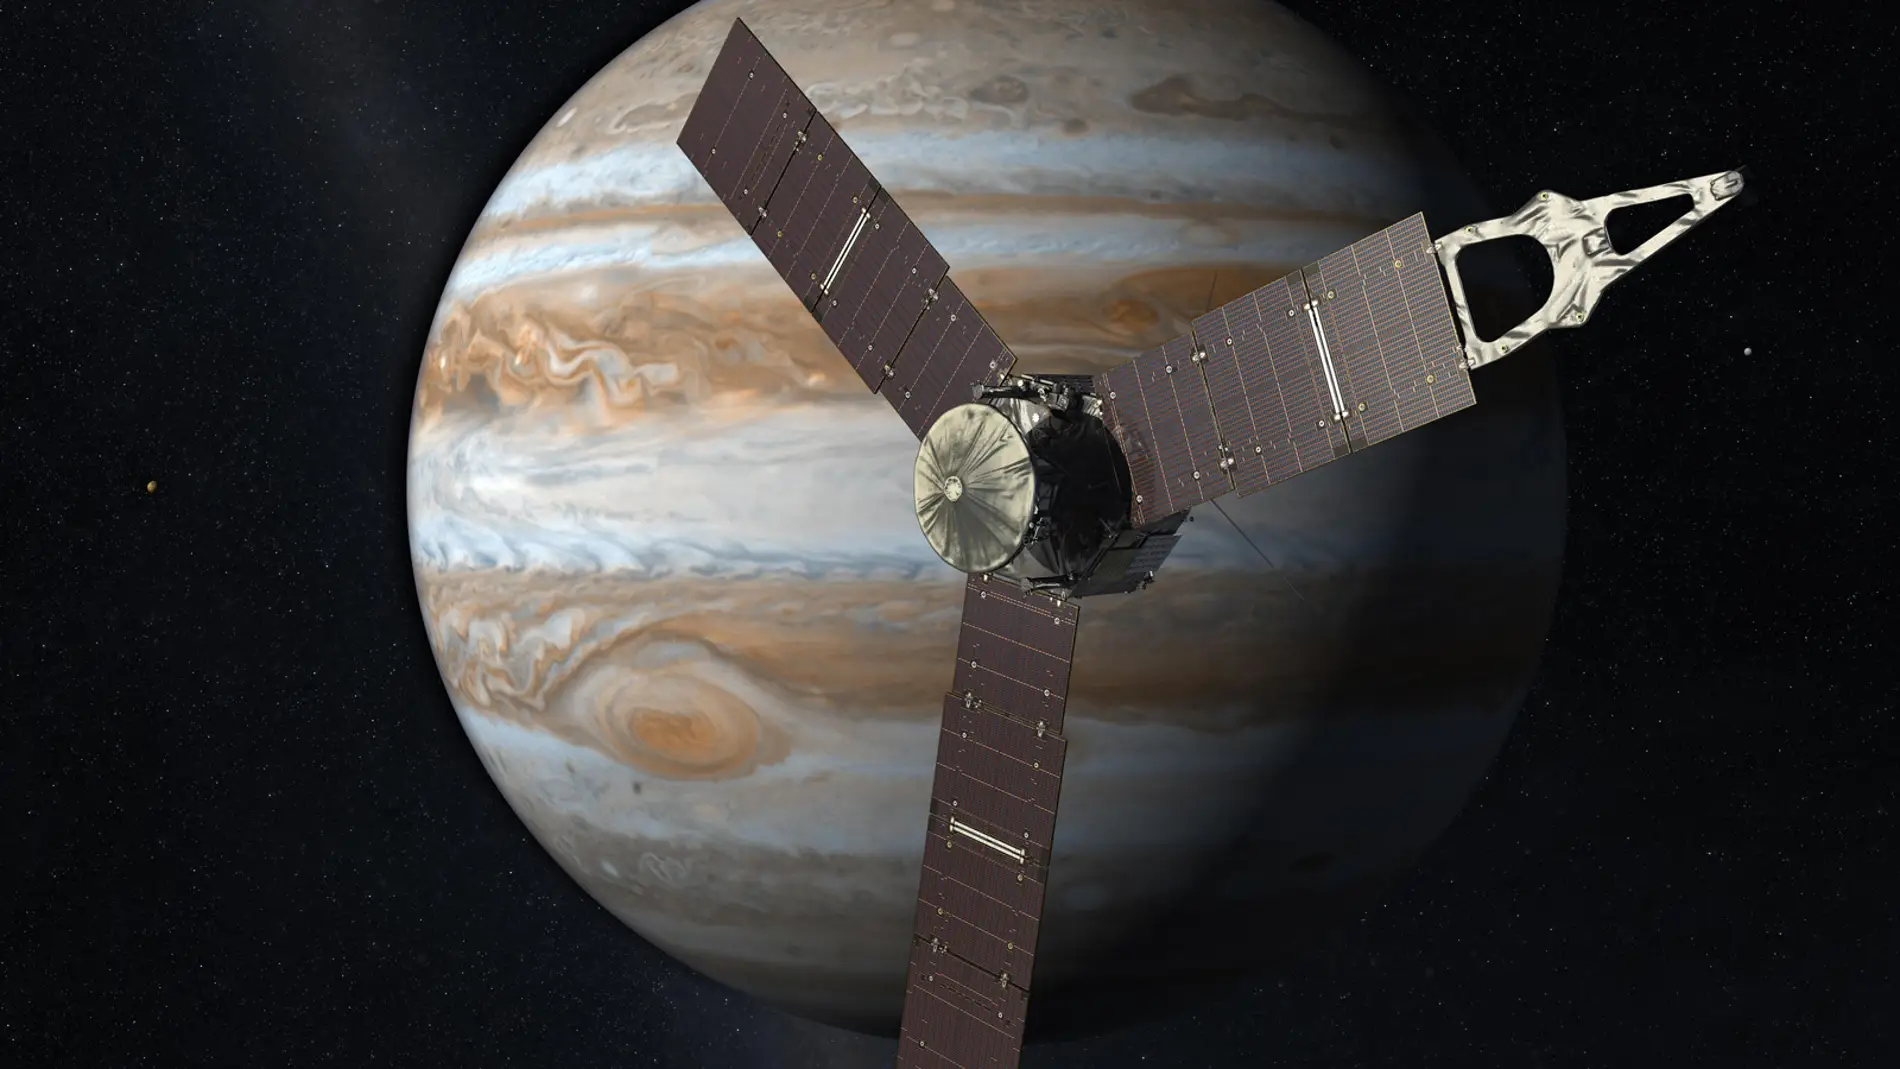 Representación artística de la sonda Juno sobre el planeta Júpiter y algunos de sus satélites.